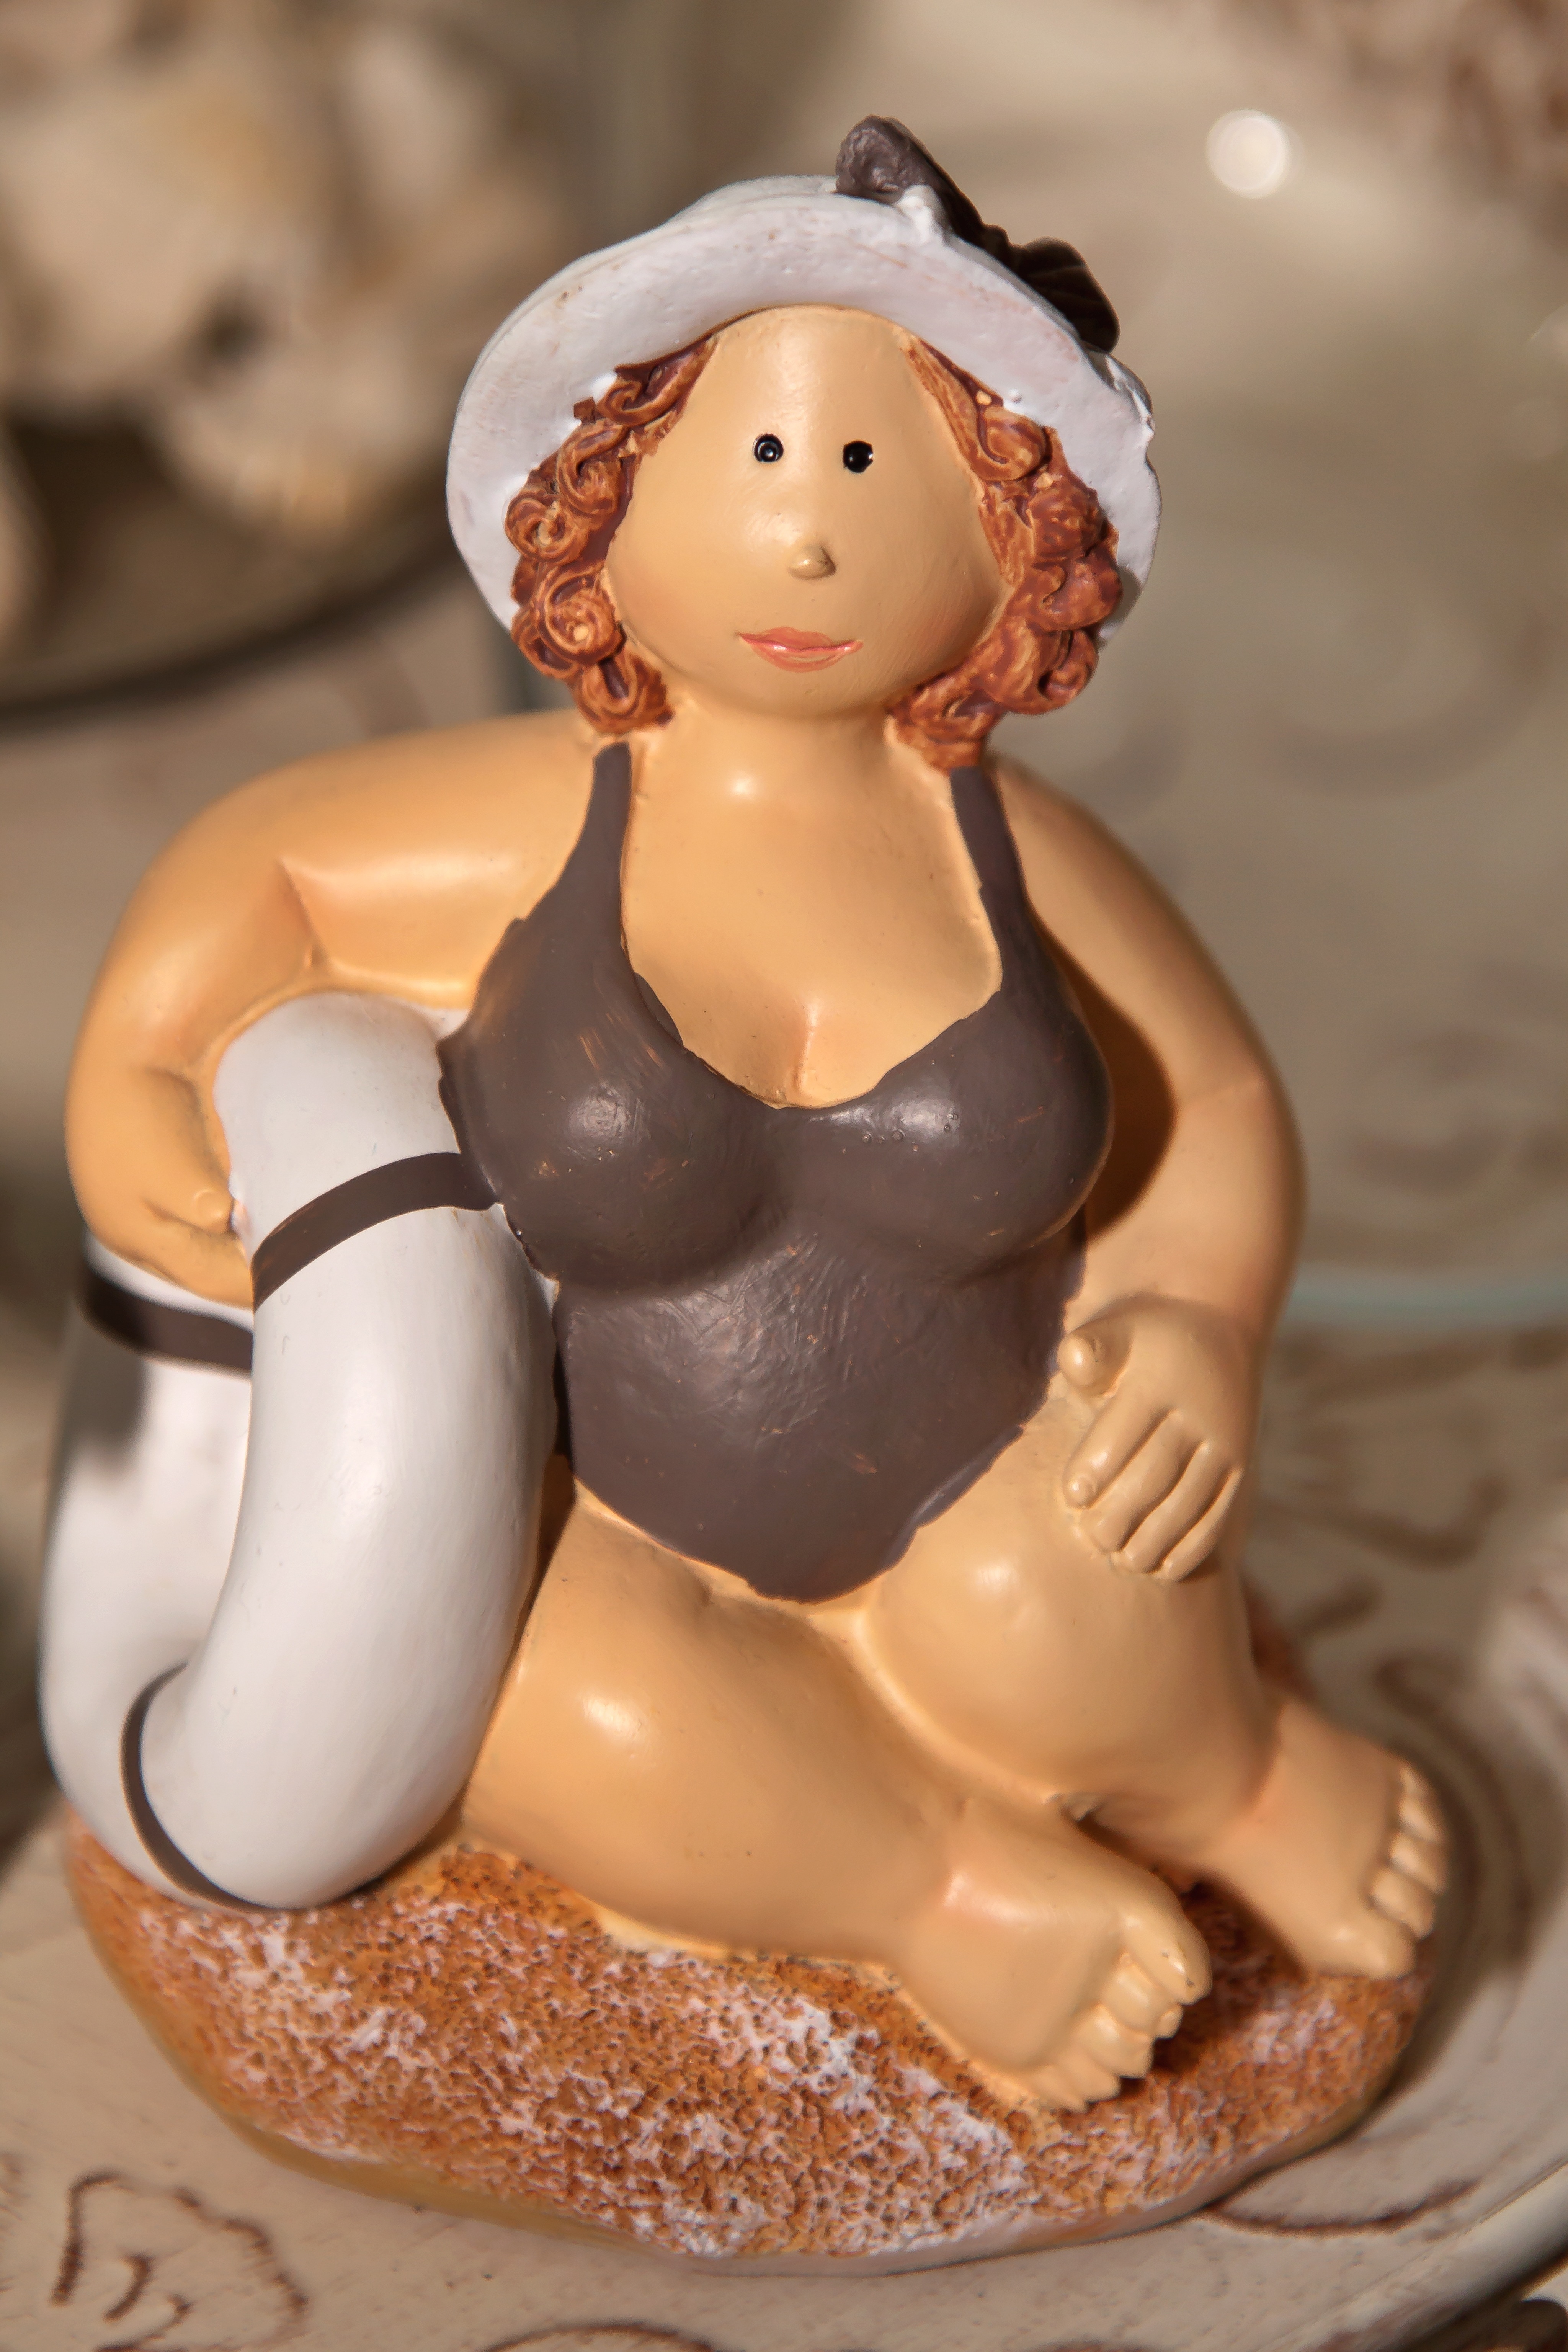 woman wearing swimsuit figurine